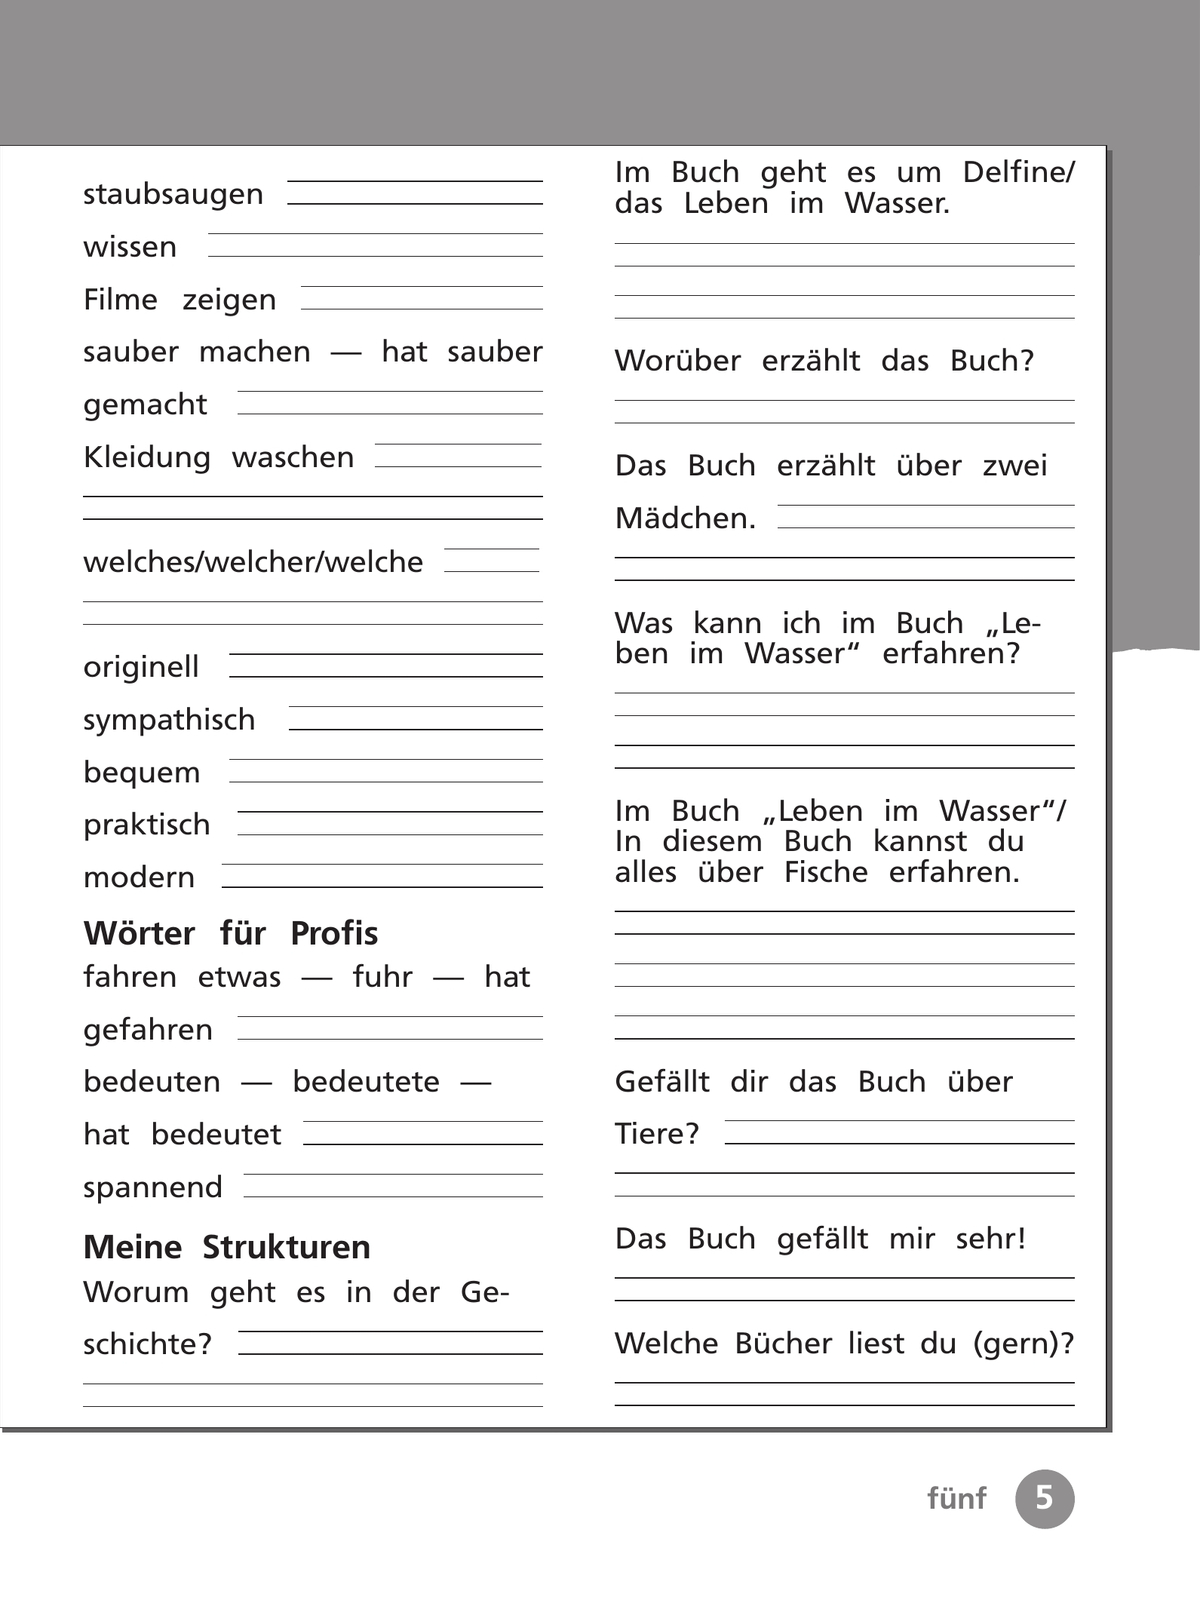 Немецкий язык. Рабочая тетрадь. 4 класс. В 2 ч. Часть 2 5